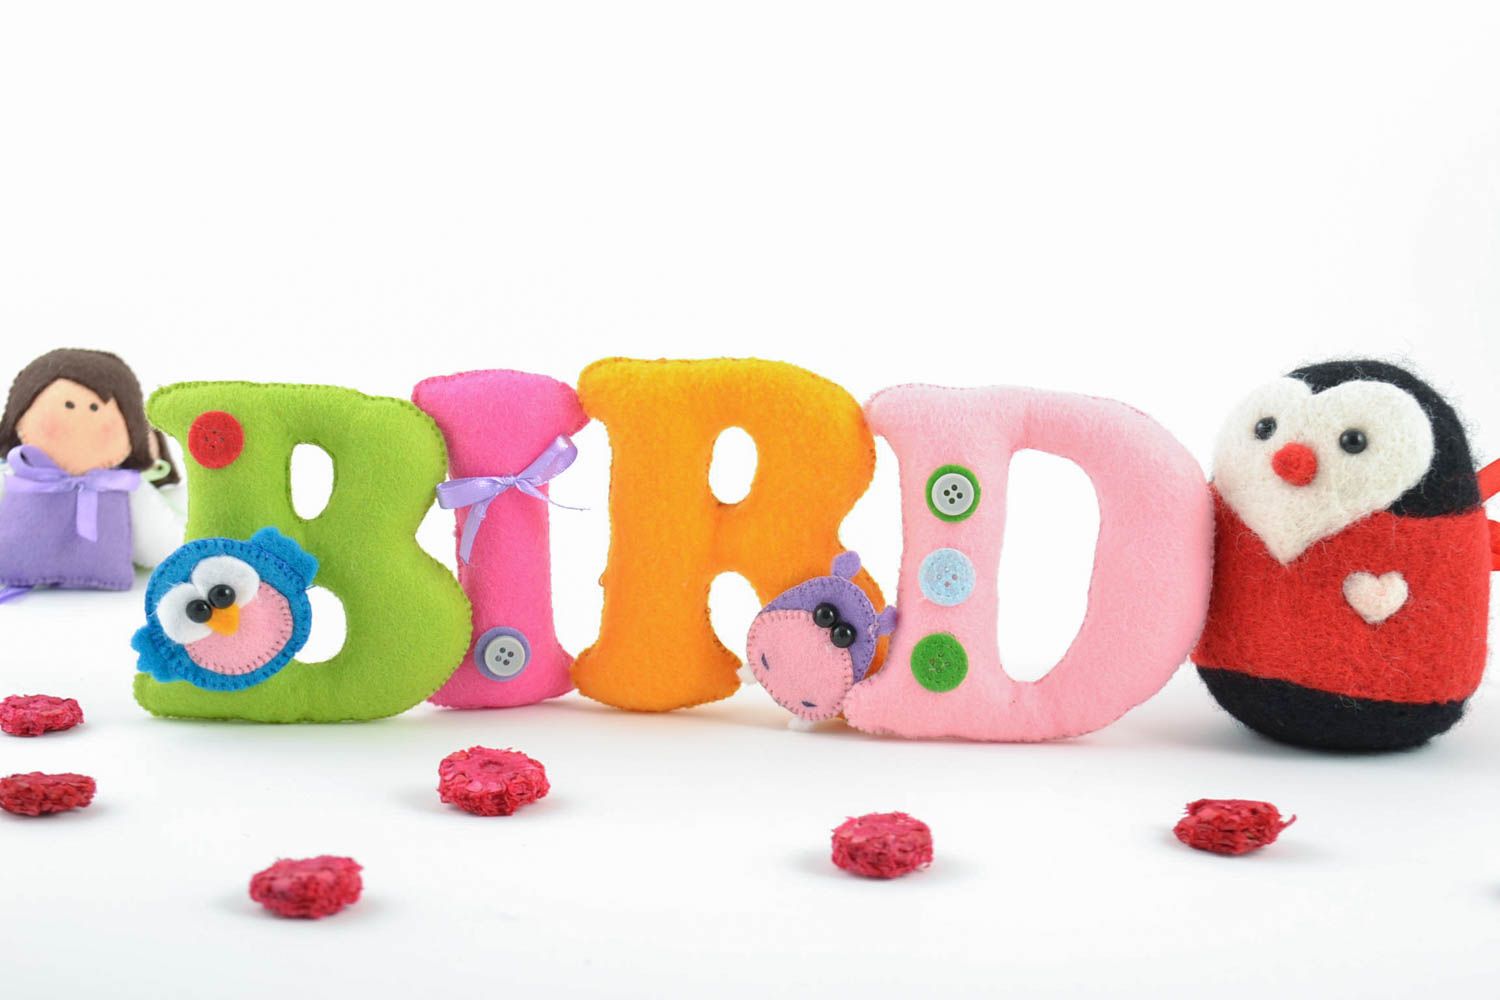 Handmade dekorative Buchstaben Set aus Filz bunt schön für Kinder Dekowort Bird foto 1